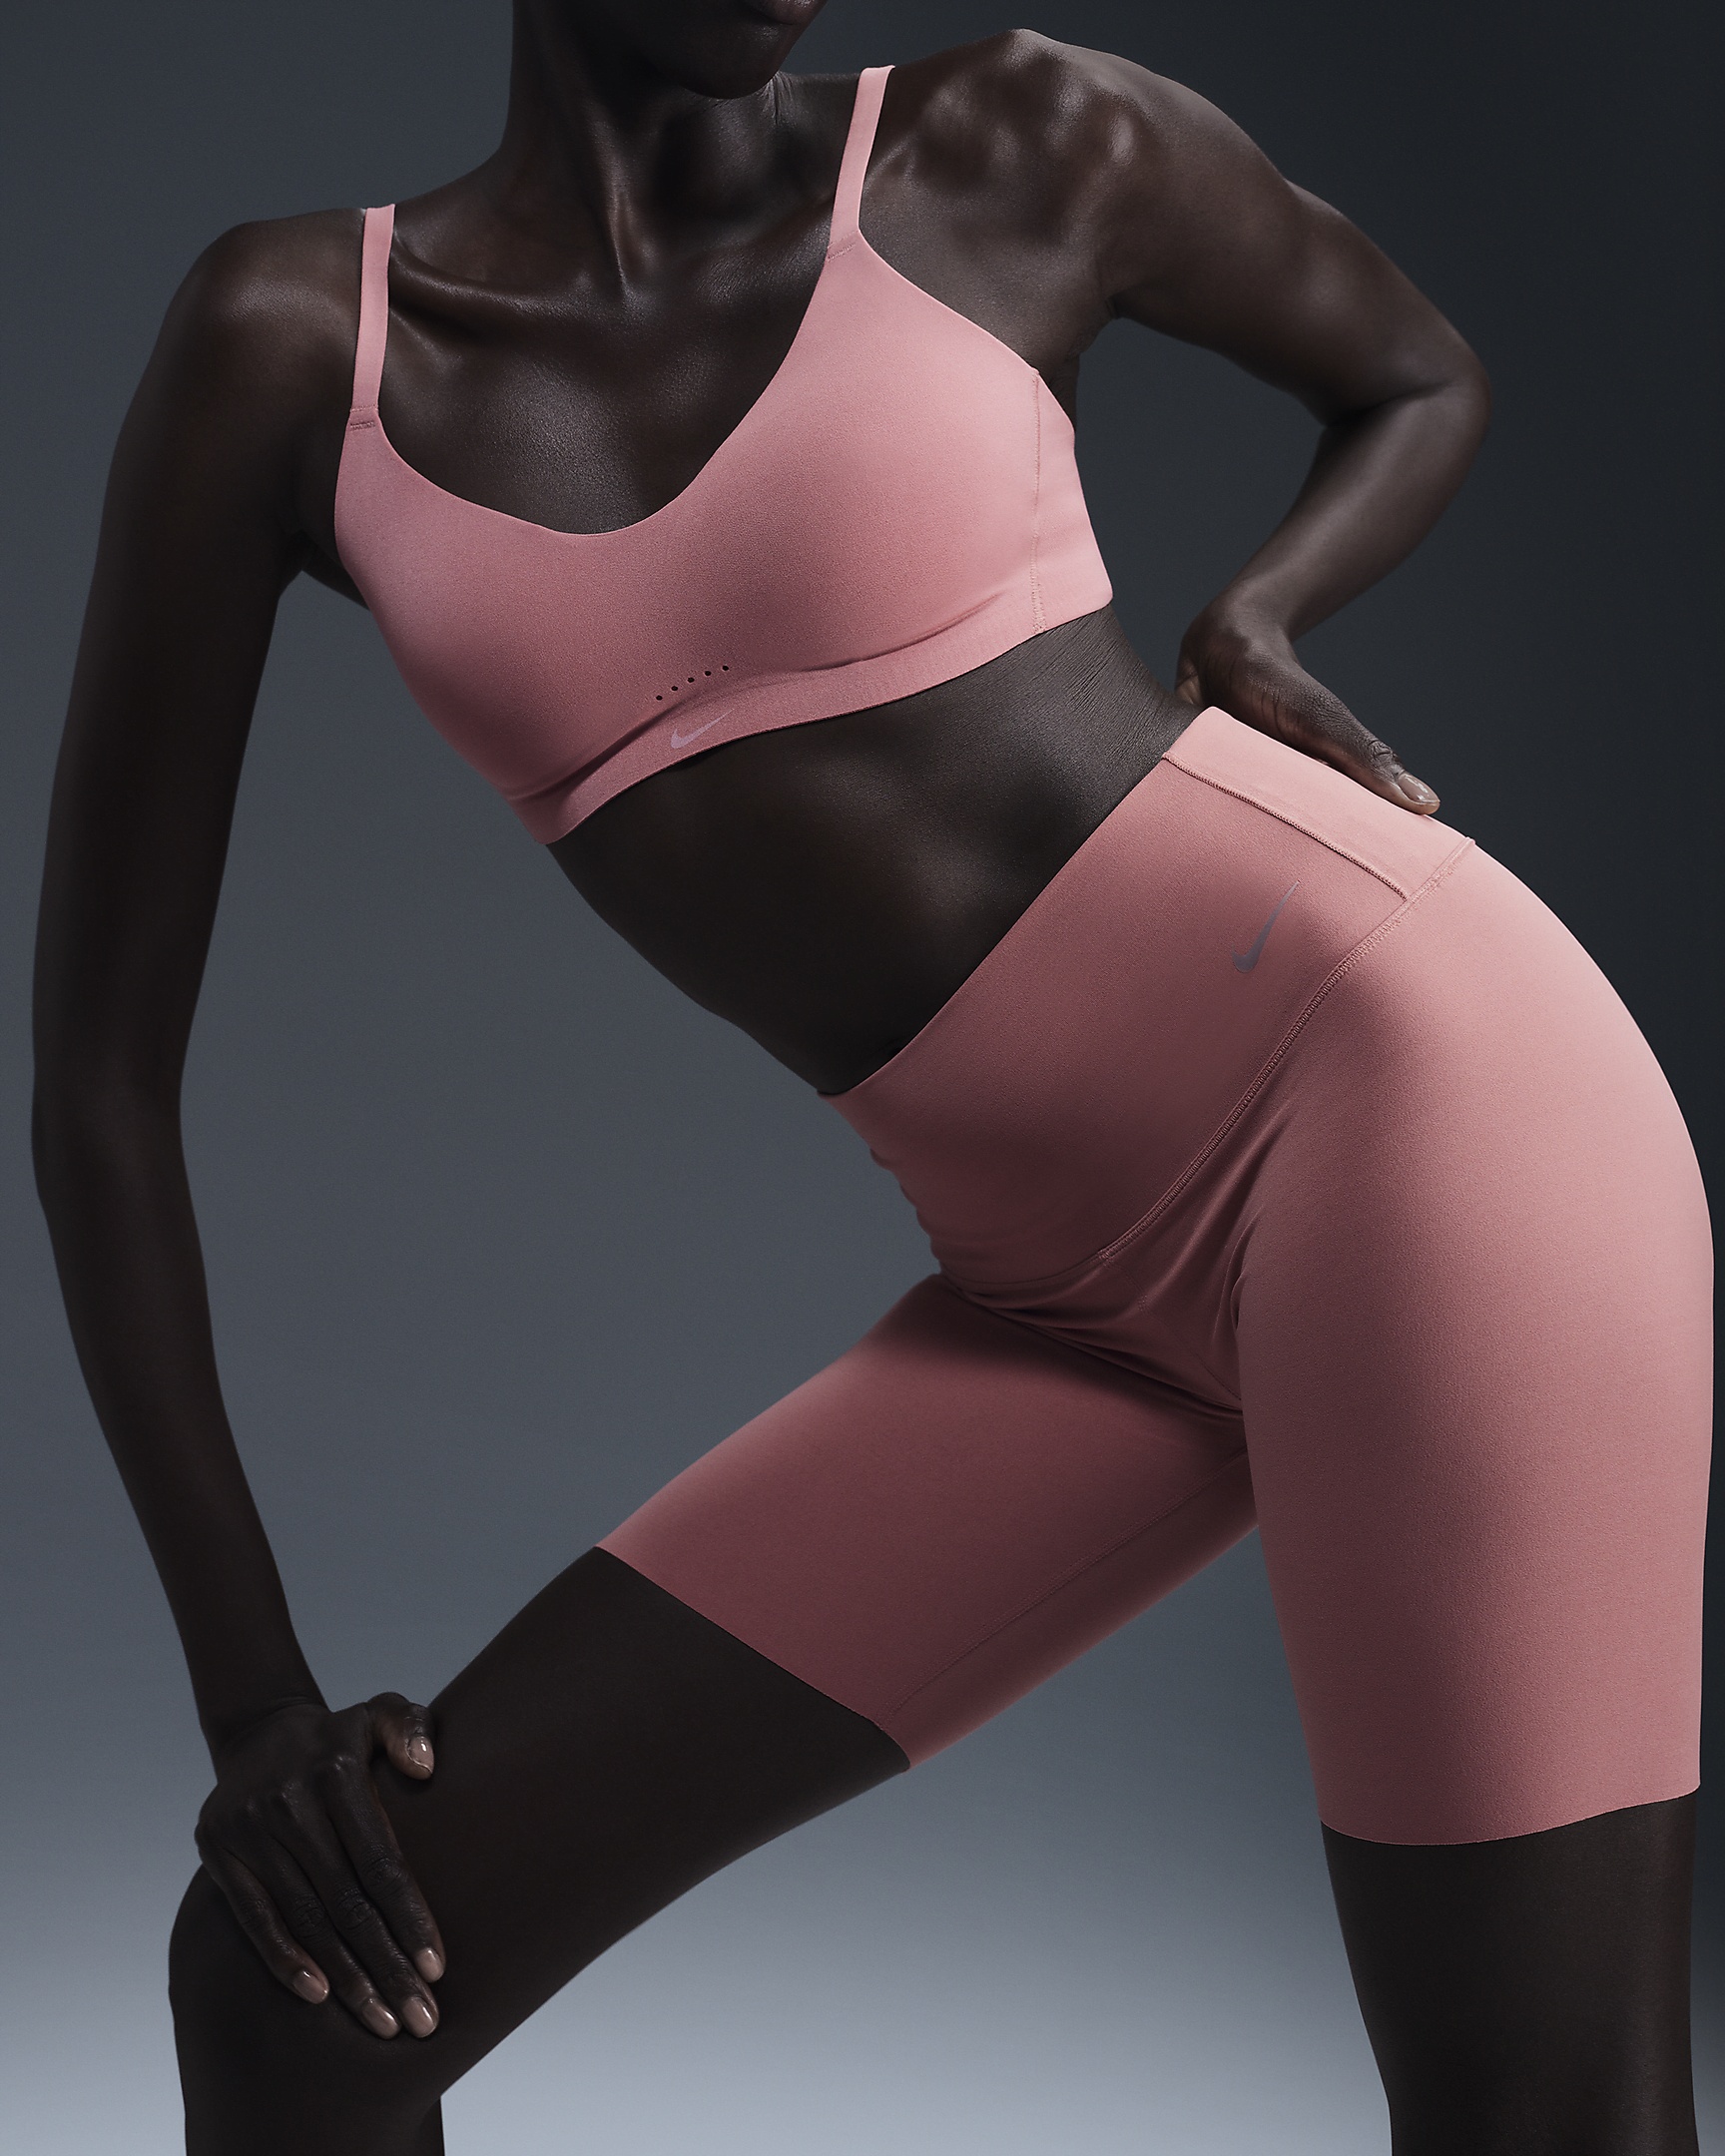 Nike Alate Minimalist Women's Light-Support Padded Convertible Sports Bra - 2